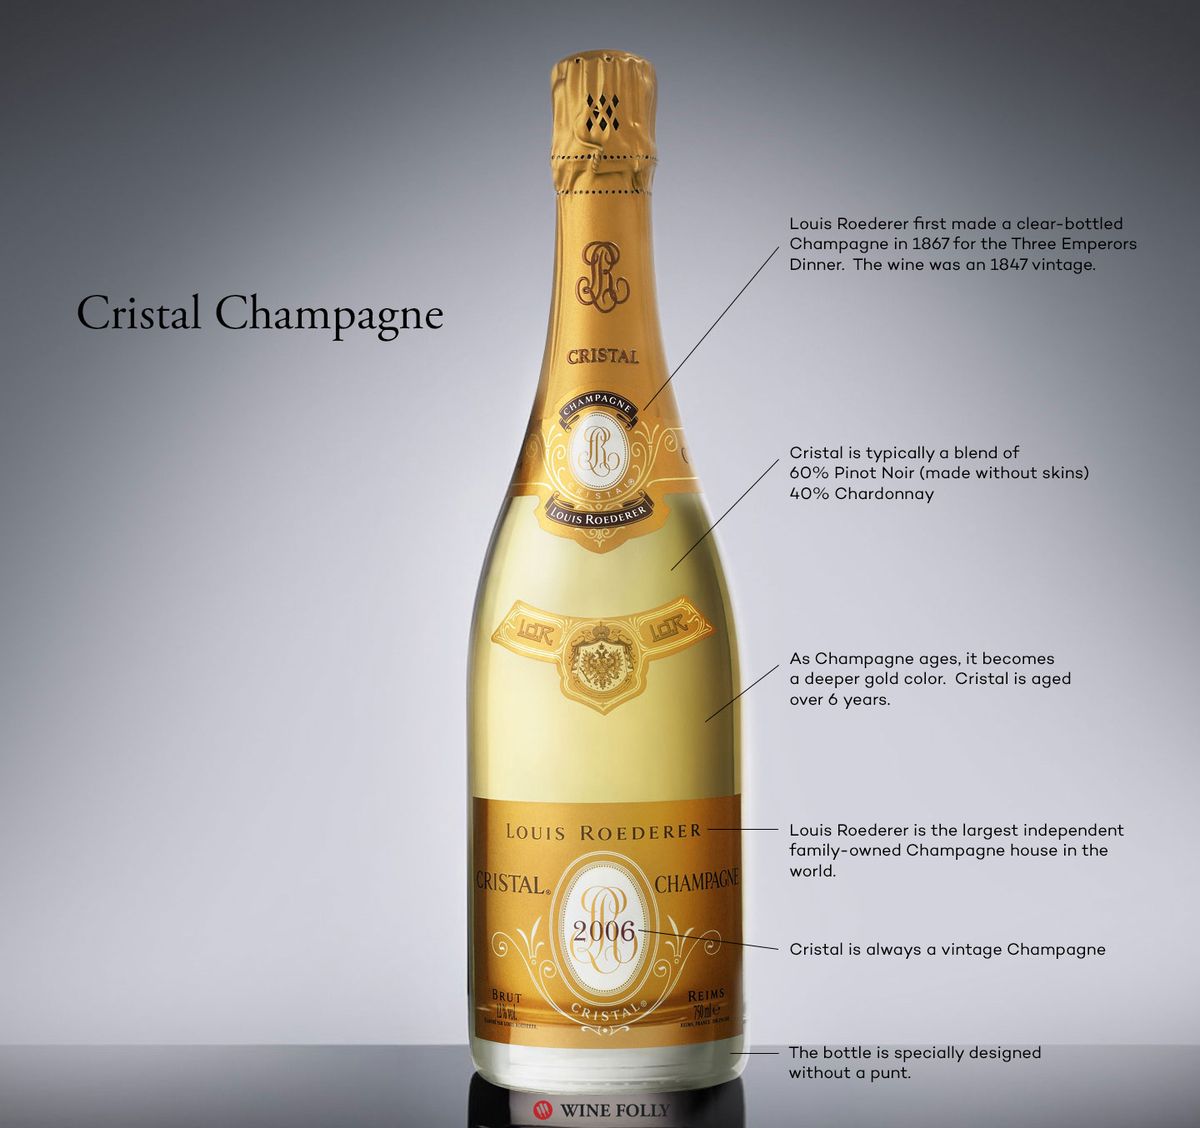 Cristal Champagne (también conocido como